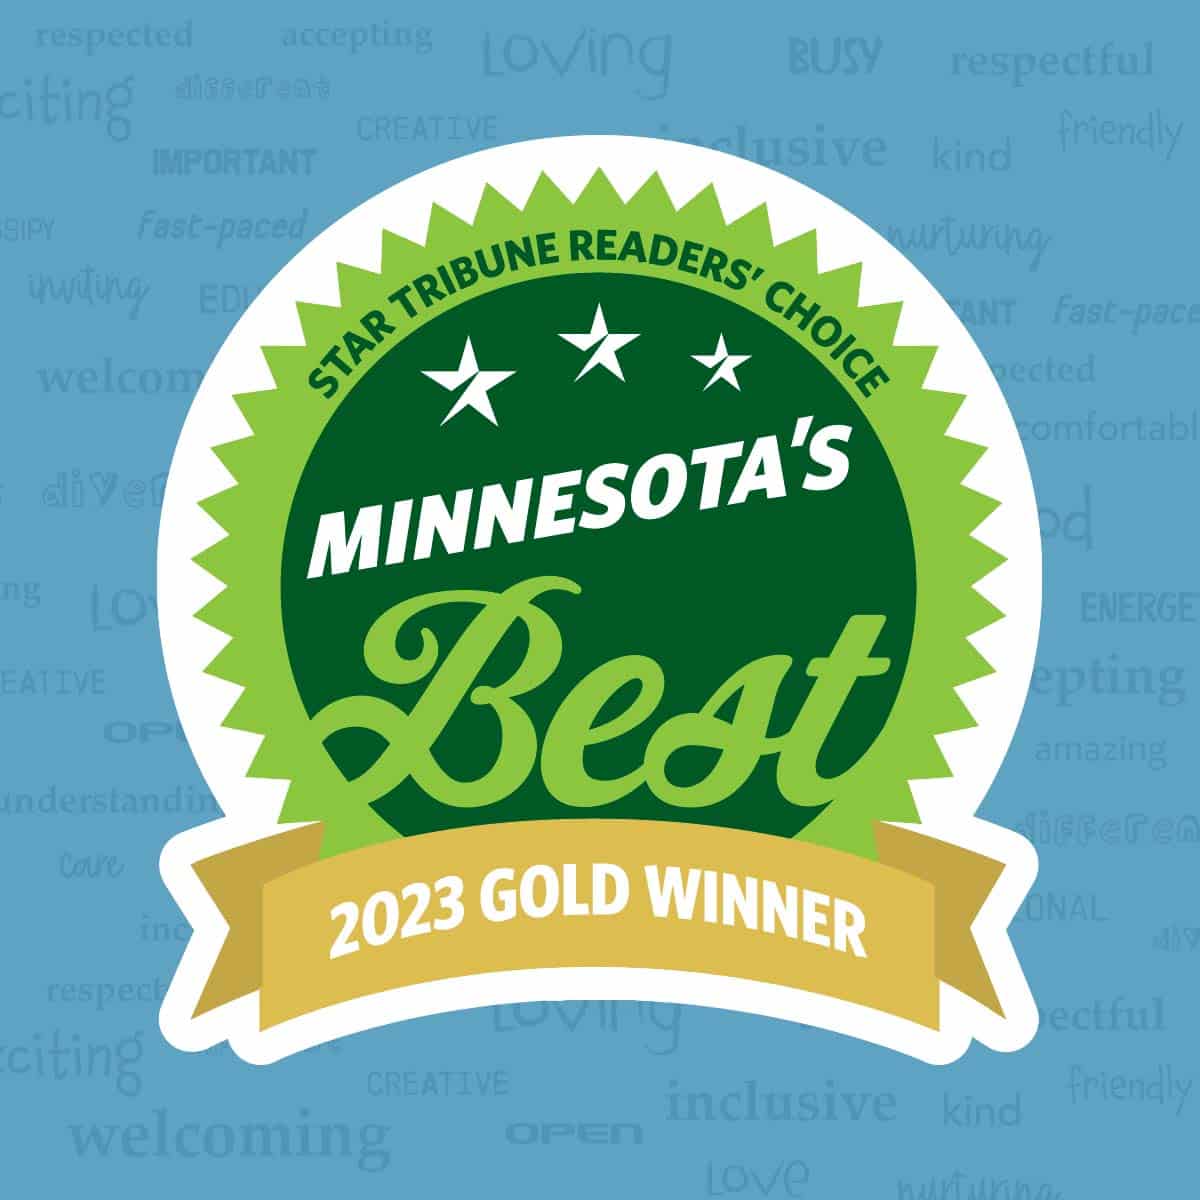 New Horizon Academy named Star Tribune's 2023 Gold Winner for Minnesota's Best childcare!